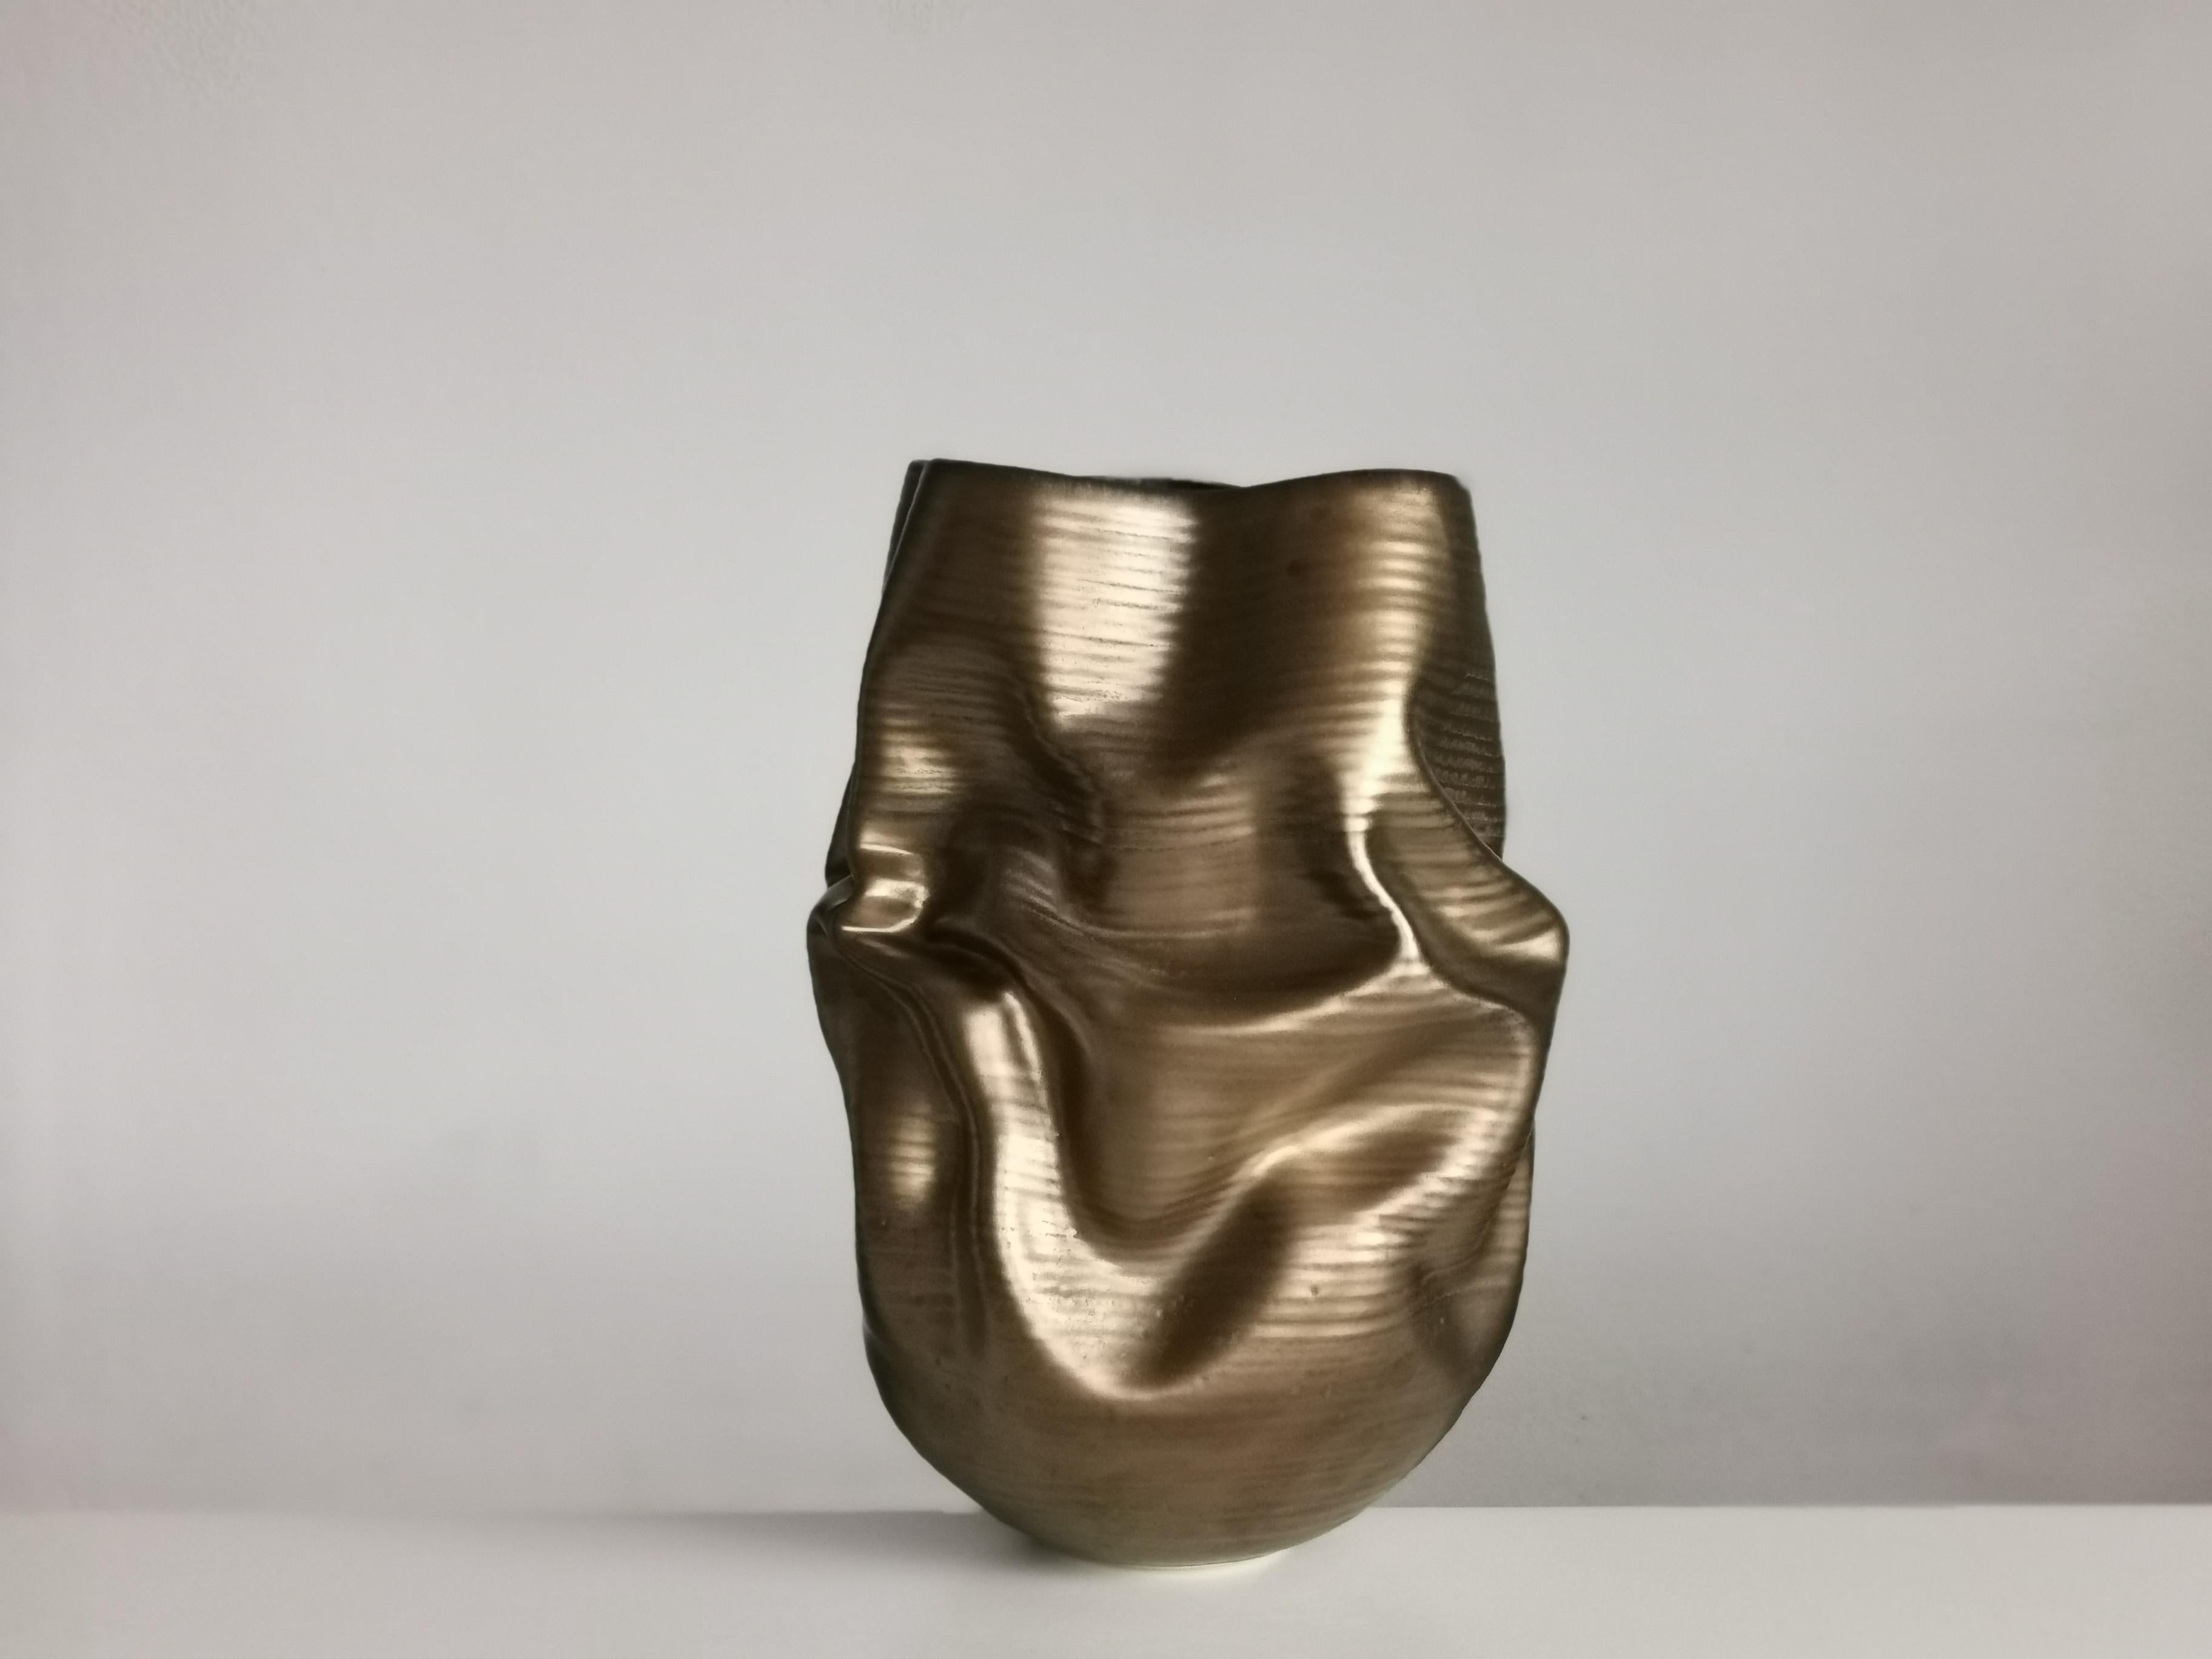 Spanish Gold Crumpled Form, Unique Ceramic Sculpture Vessel N.76